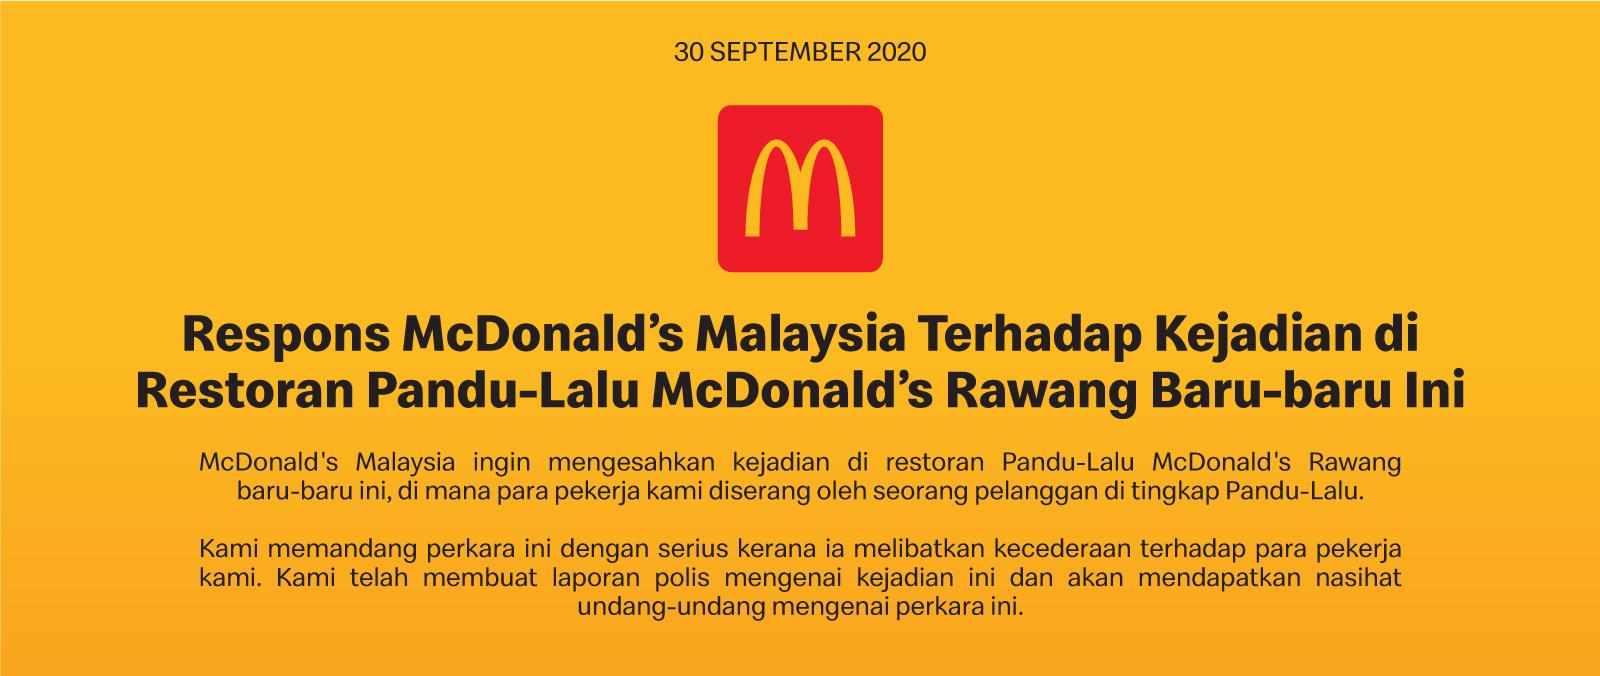 Respons McDonald’s Malaysia Terhadap Kejadian di Restoran Pandu-Lalu McDonald’s Rawang Baru-baru Ini's image'